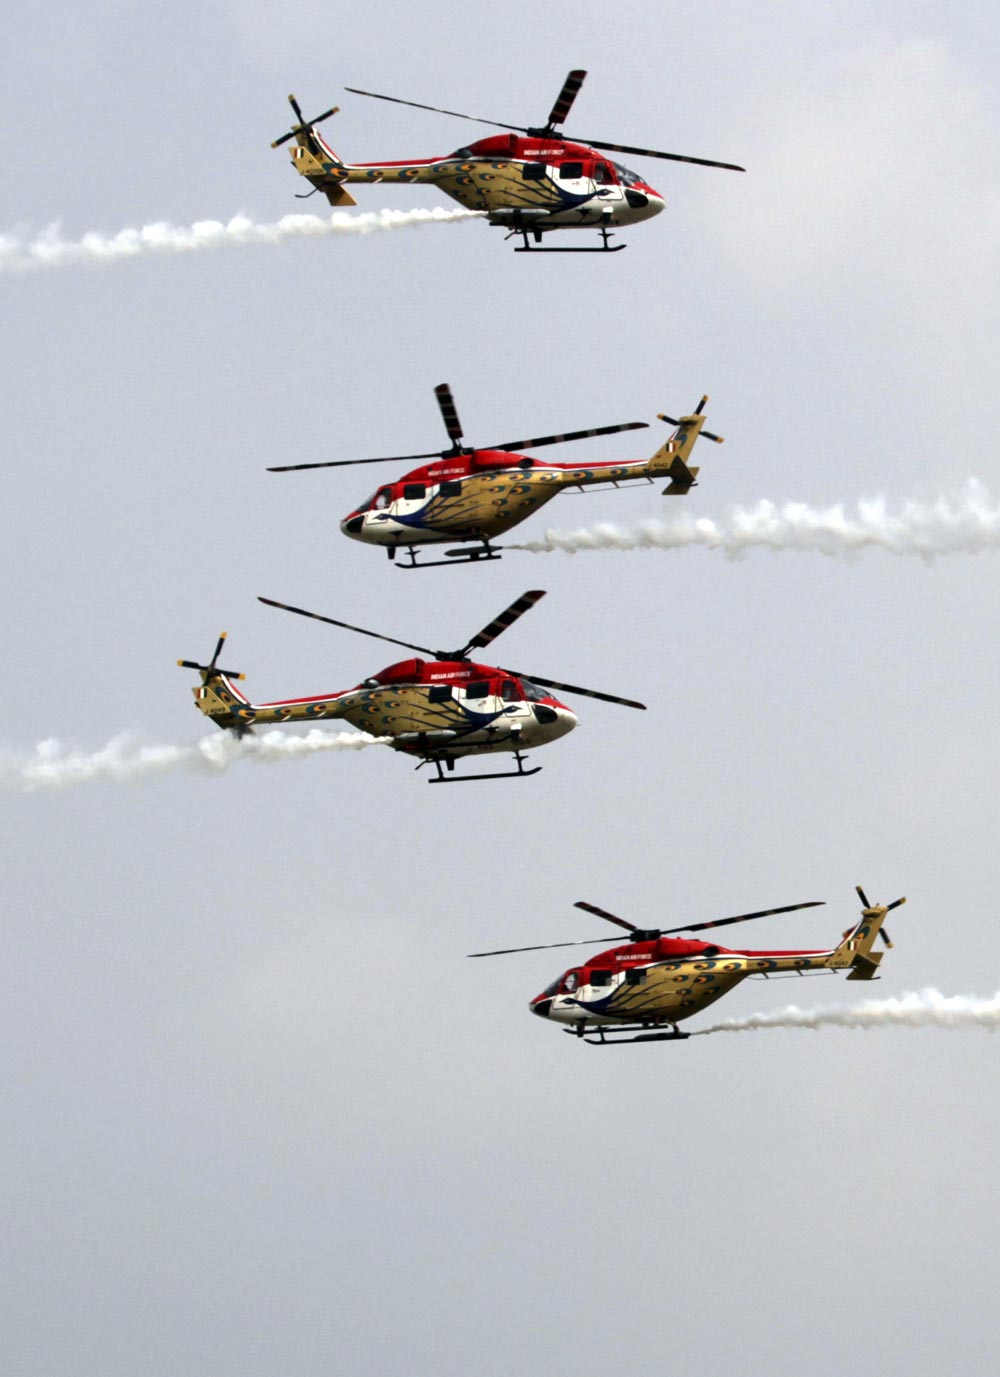 नवी दिल्ली - ८१व्या 'एअर फोर्स डे'साठीच्या दिवशी प्रात्यक्षिकांची रंगीत तालीम करतांना एअर फोर्सची 'सारंग' हेलिकॉप्टर...